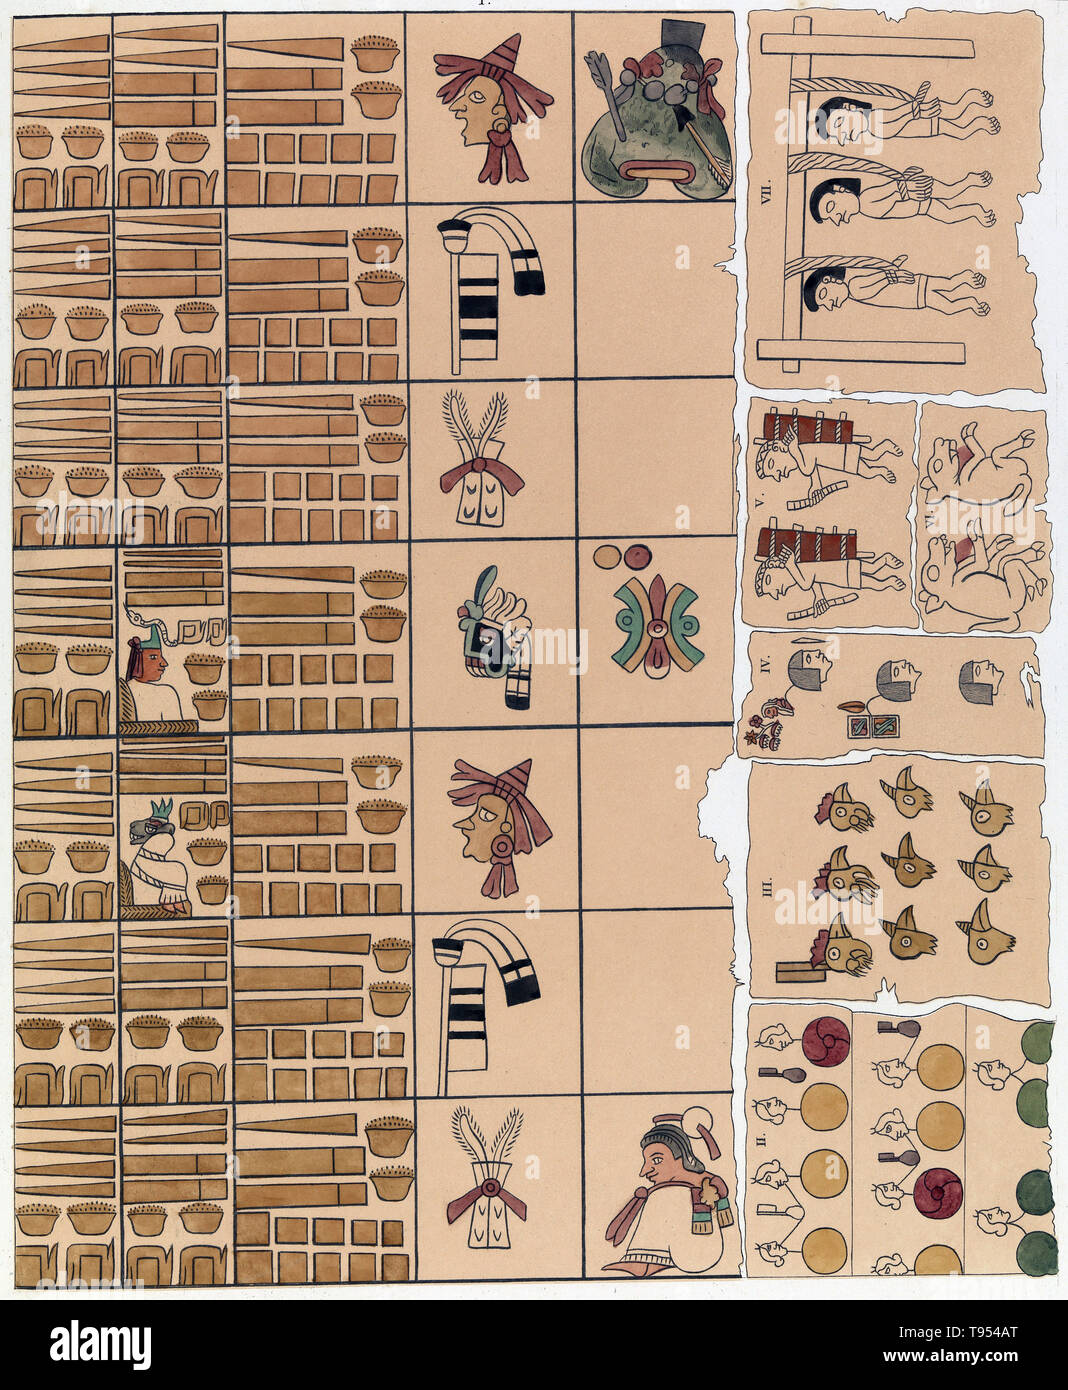 Aztec Schreiben ist eine piktografische und ideographische Präkolumbianischen schreiben System mit einigen logograms und Silben Zeichen. Aztekischen Kultur, auch als Mexica Kultur bekannt, ein Mesoamerikanischen Kultur war, dass in zentralen Mexiko in der Post blühte - klassische Periode von 1300 bis 1521. Die Mehrheit der aztekische Codices wurden verbrannt entweder durch Aztec tlatoani (Herrscher) aus ideologischen Gründen, oder von spanischen Klerus nach der Eroberung von Mesoamerika. Verbleibende aztekische Codices wie Codex Mendoza, Codex Borbonicus und Codex Osuna wurden geschrieben auf deer verstecken und Pflanzenfasern. Stockfoto